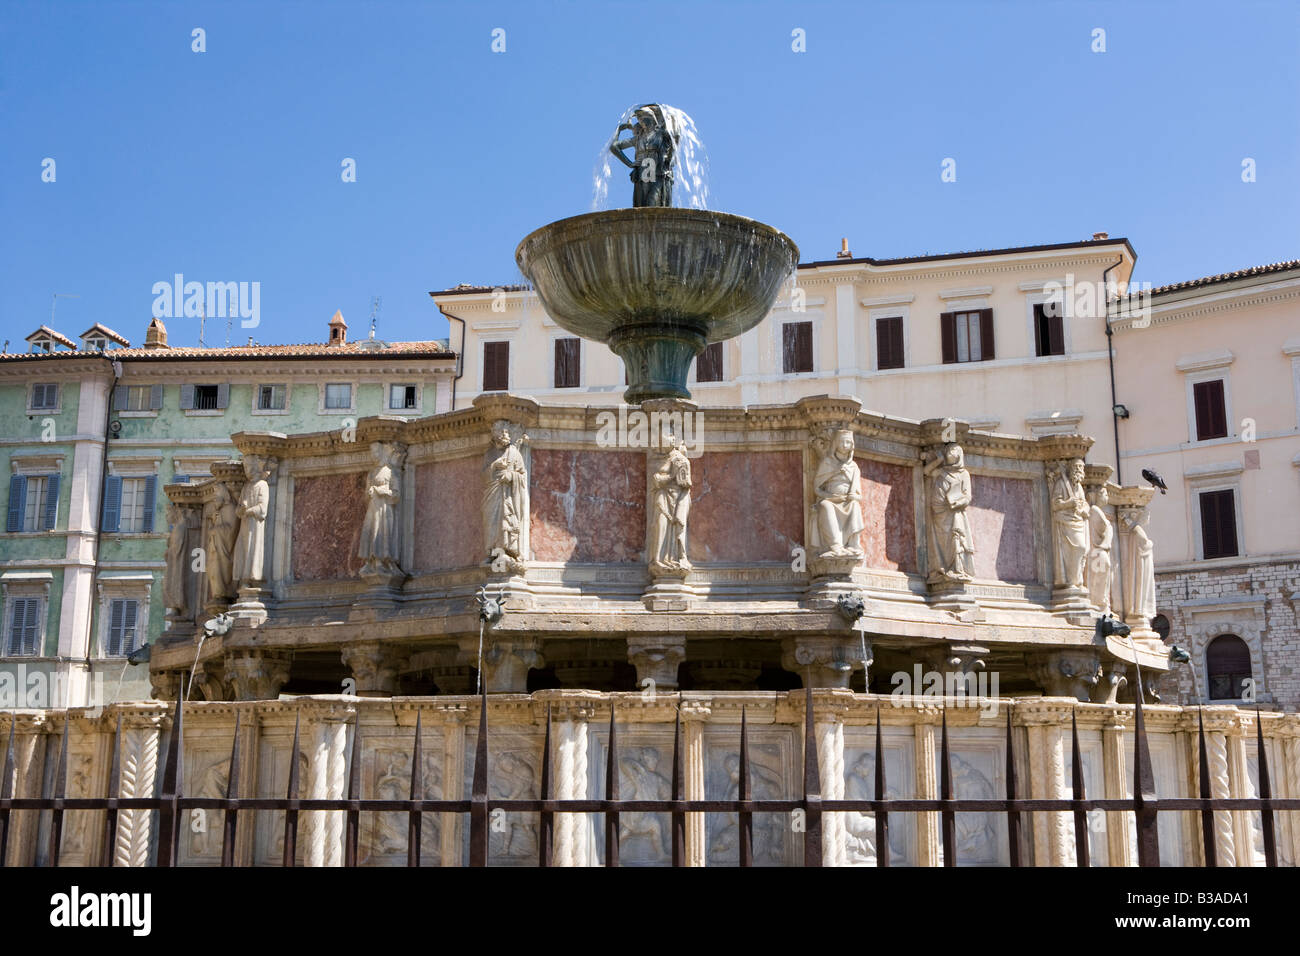 Fontana Maggiore in Piazza IV novembre Perugia Umbria Italy Stock Photo